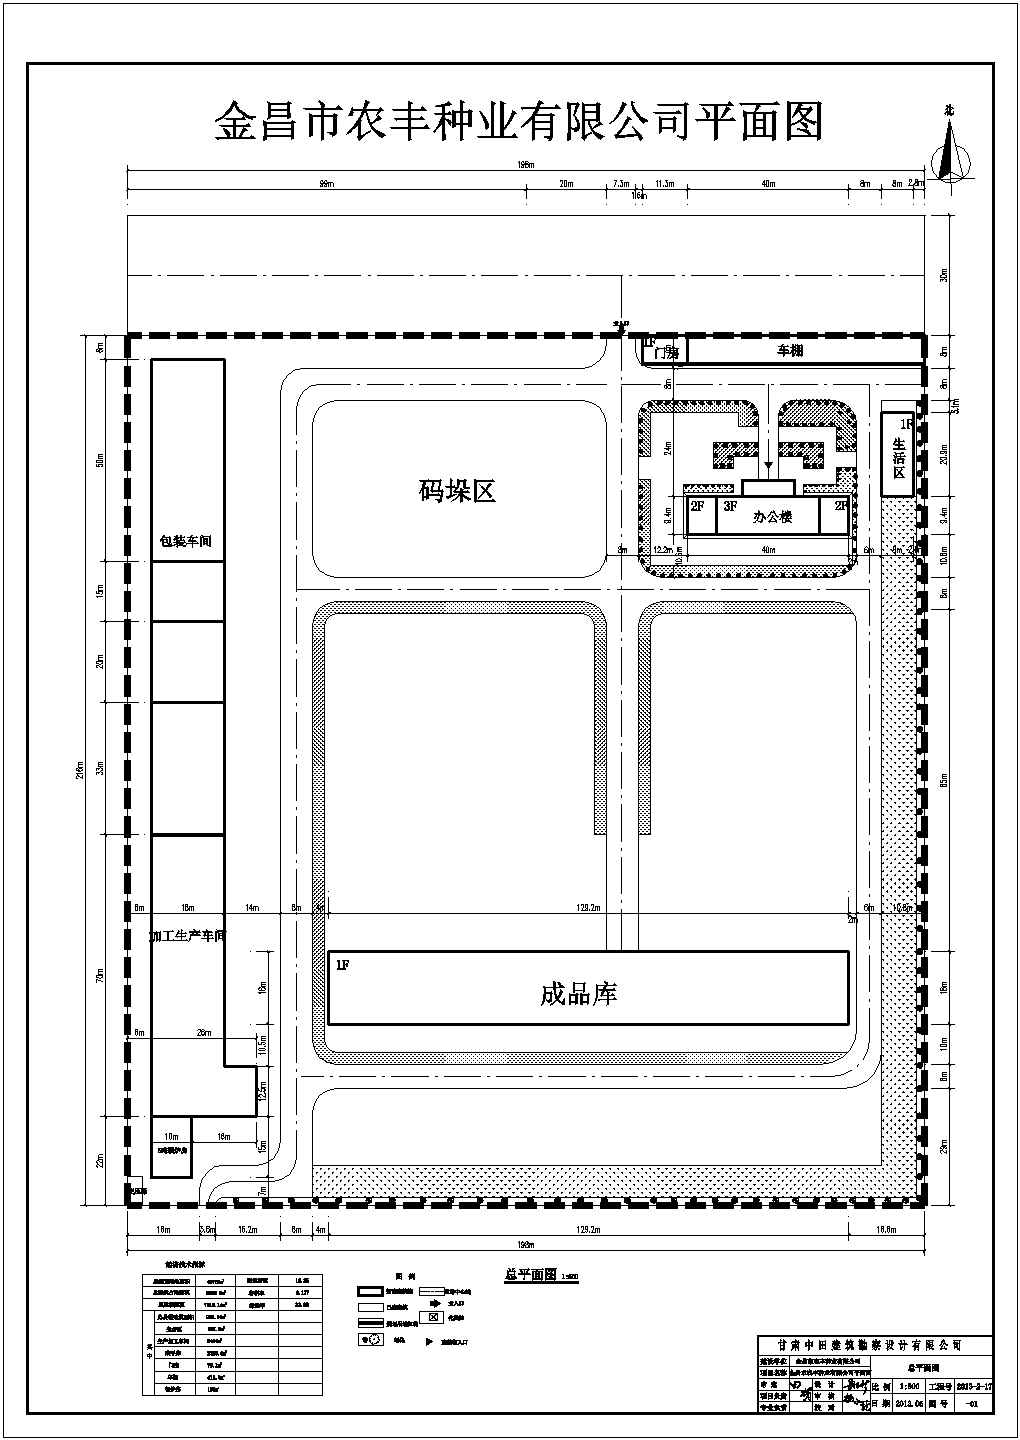 金昌市某农丰中业厂区总规划平面图